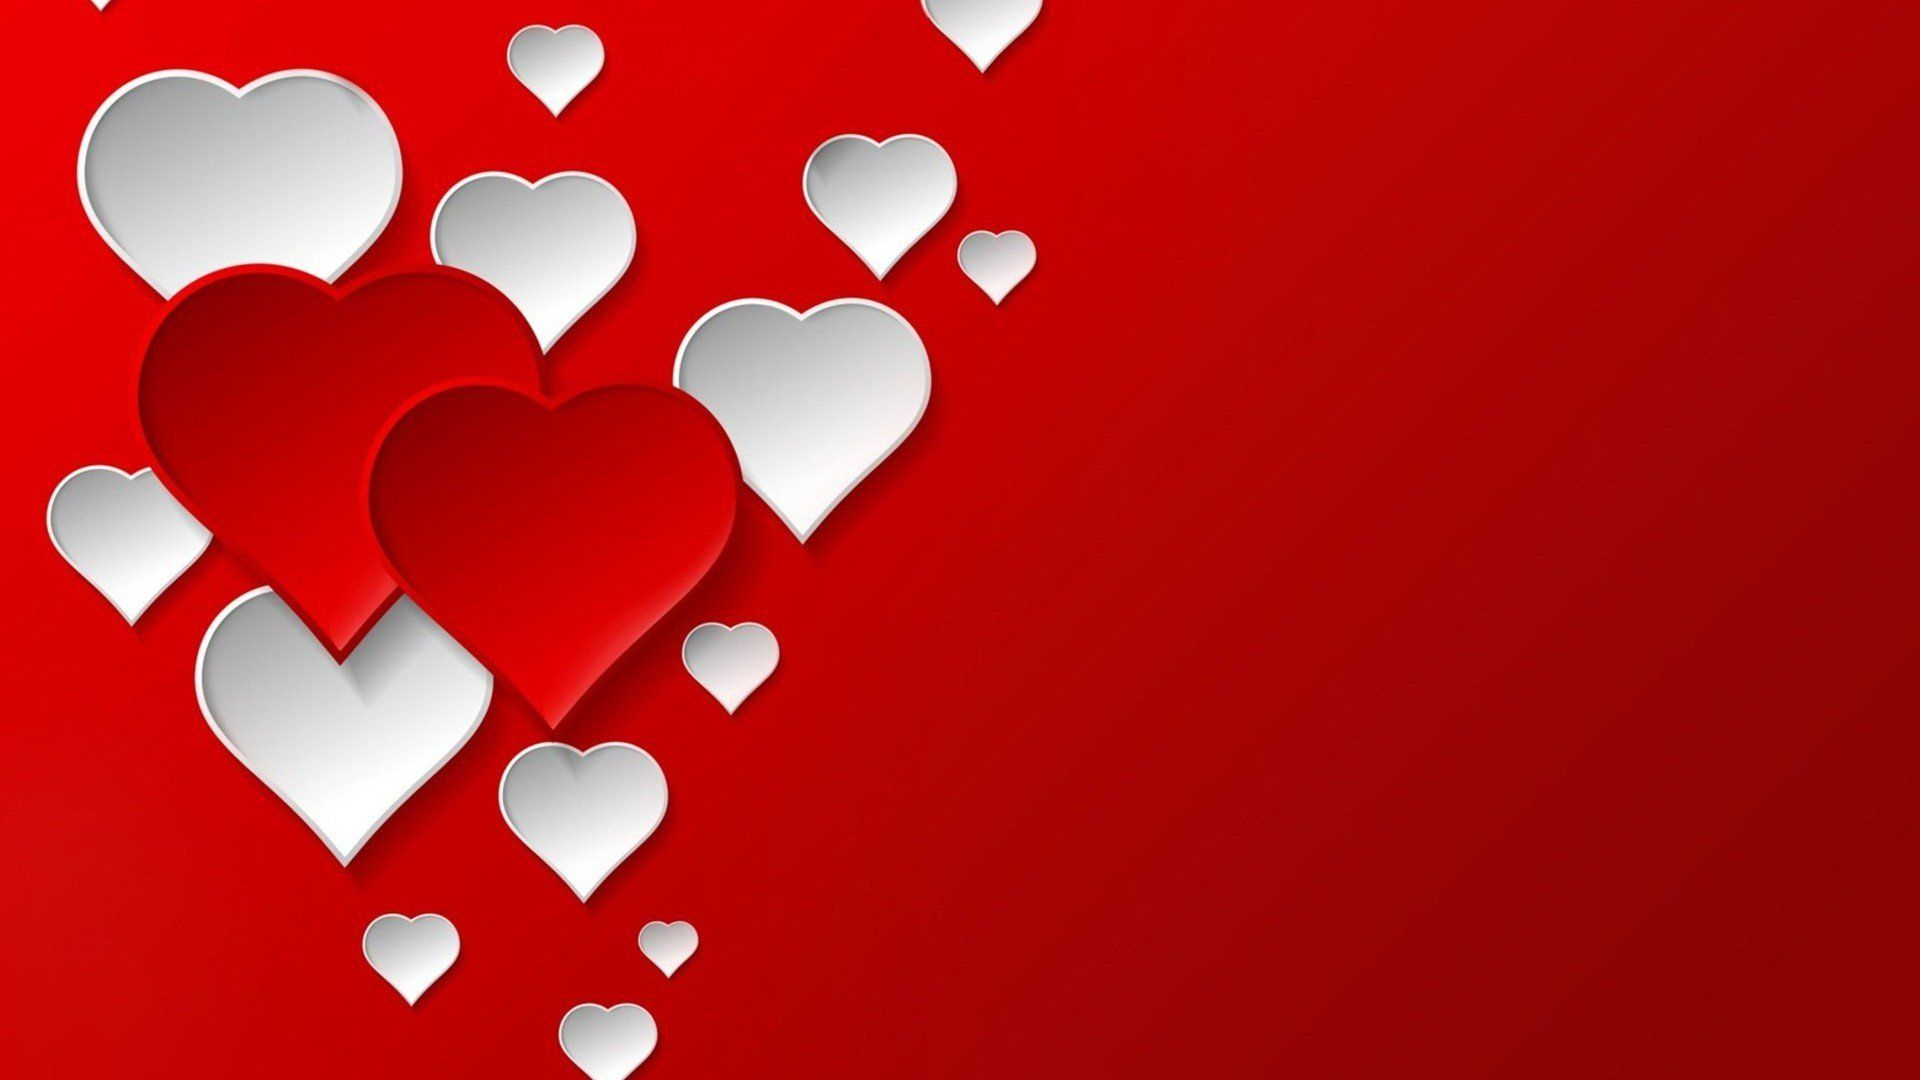 1920x1080 Valentine Heart Desktop Wallpapers Top Free Valentine Heart Desktop Backgrounds